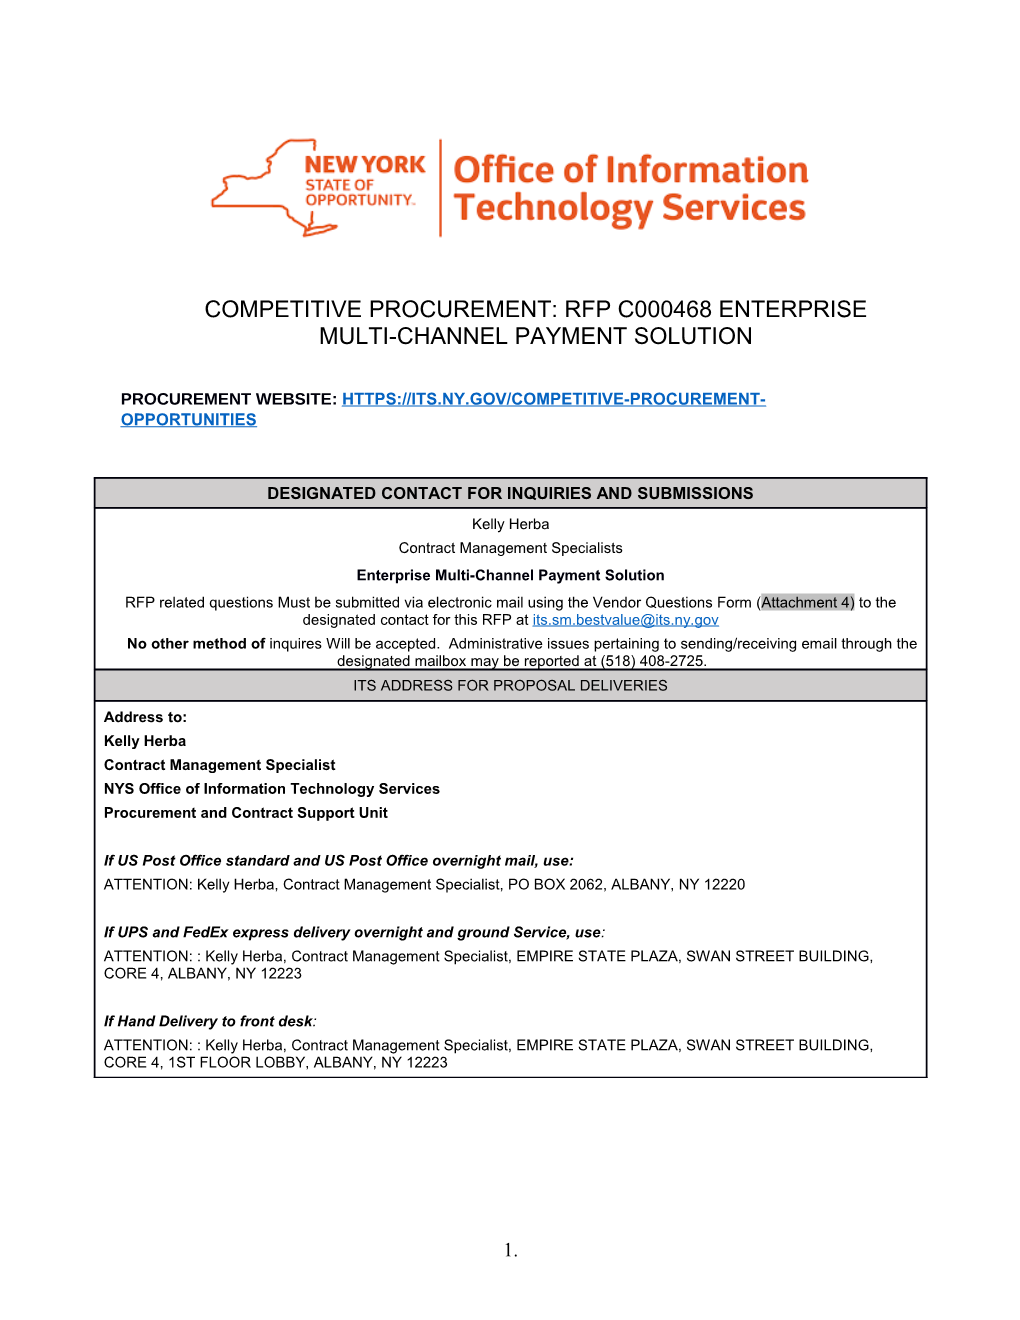 Competitive Procurement: RFP C000468 Enterprise Multi-Channel Payment Solution